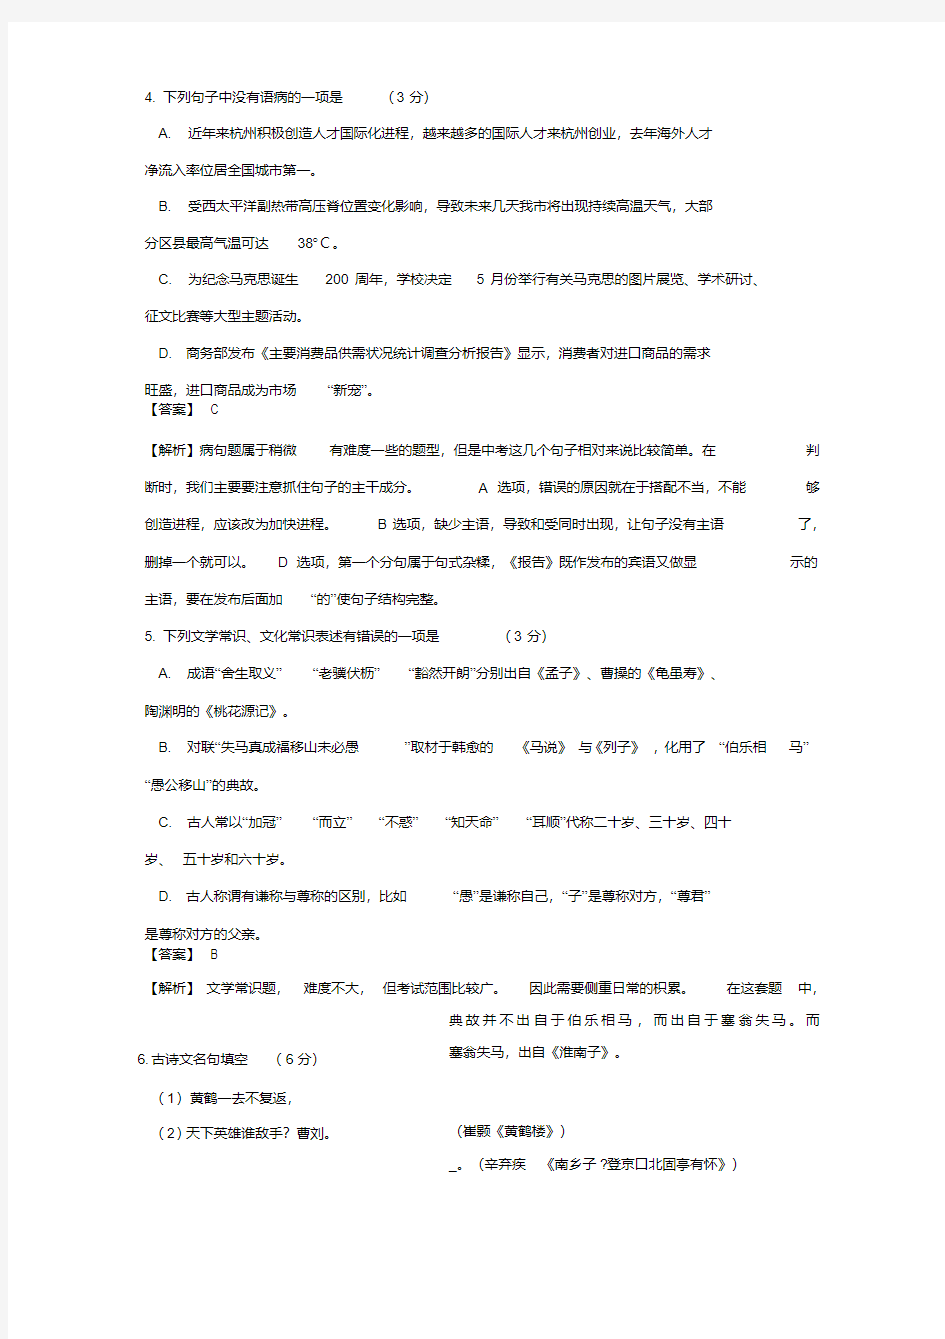 浙江省杭州市2018年中考语文试题和答案解析(20200420021810)